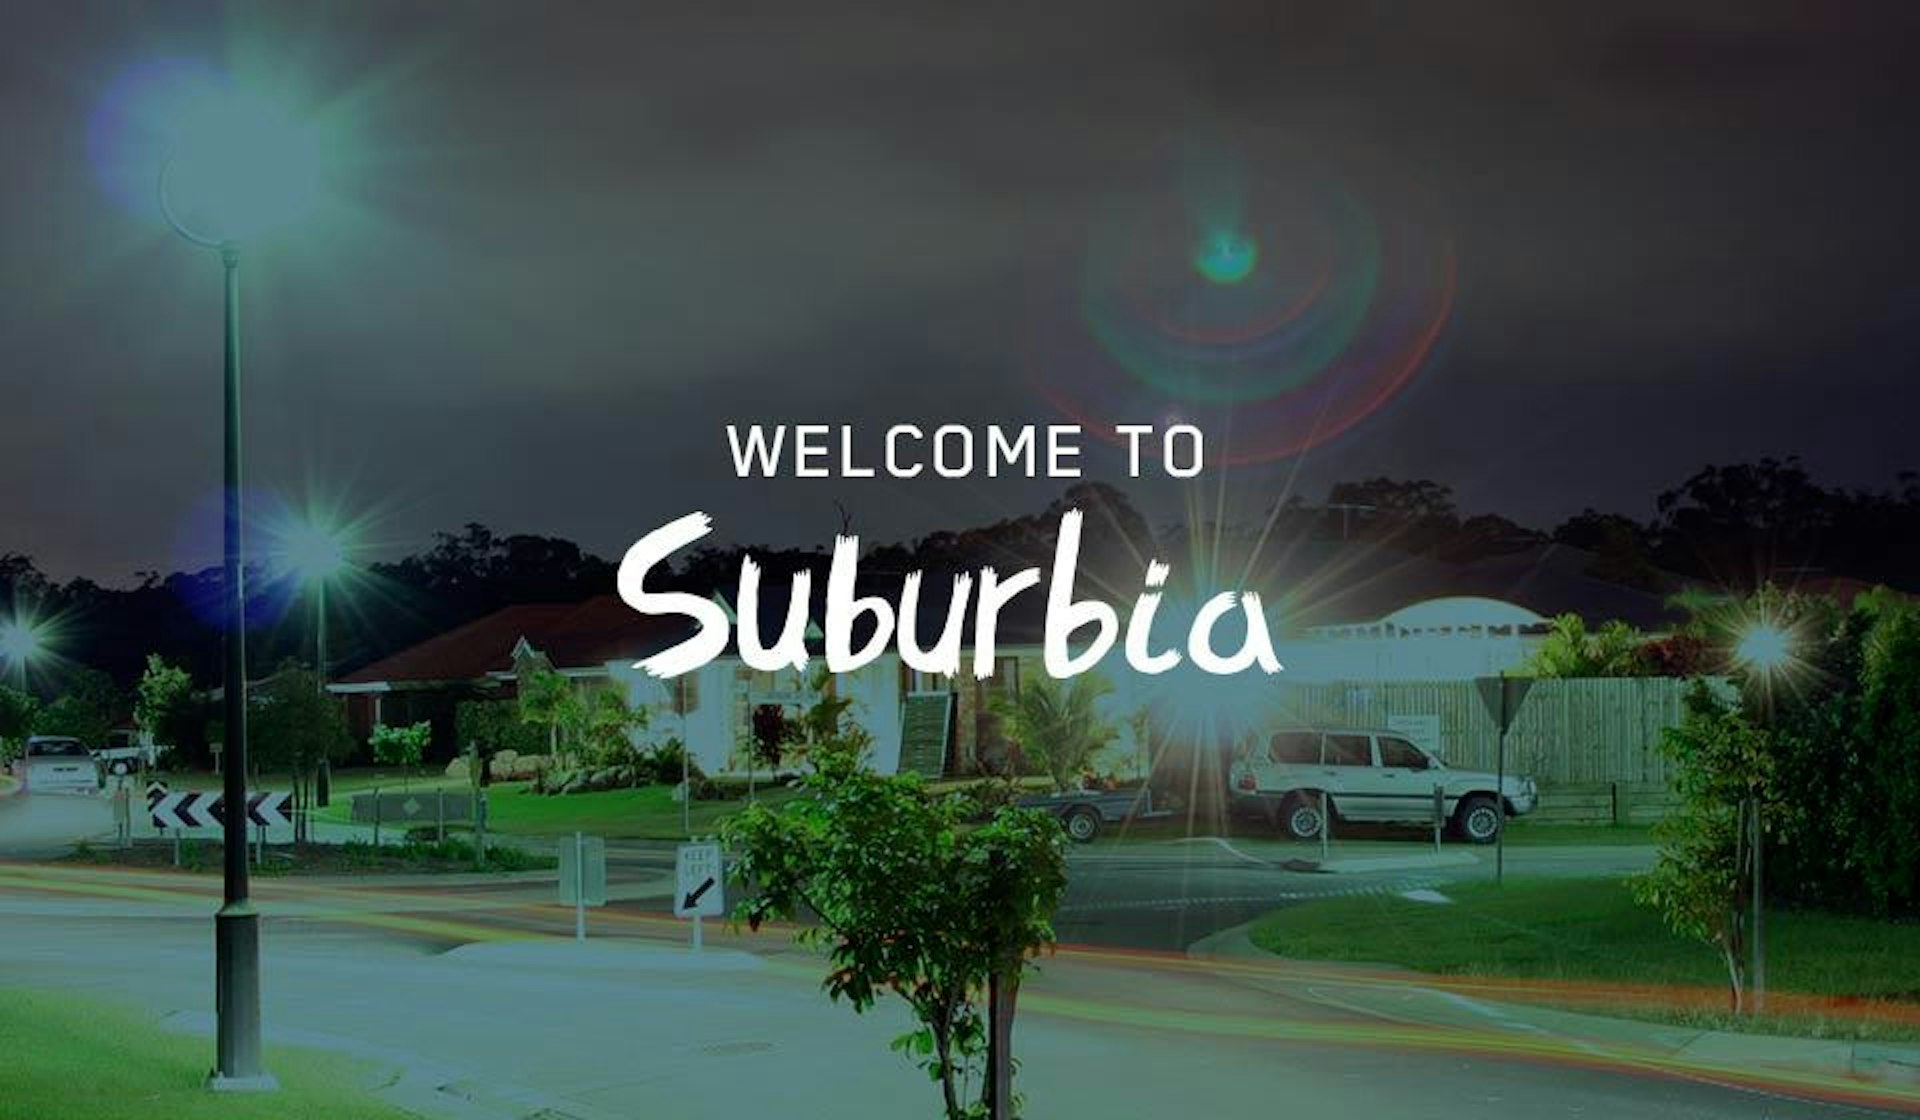 The Haunted Spirit of Suburbia